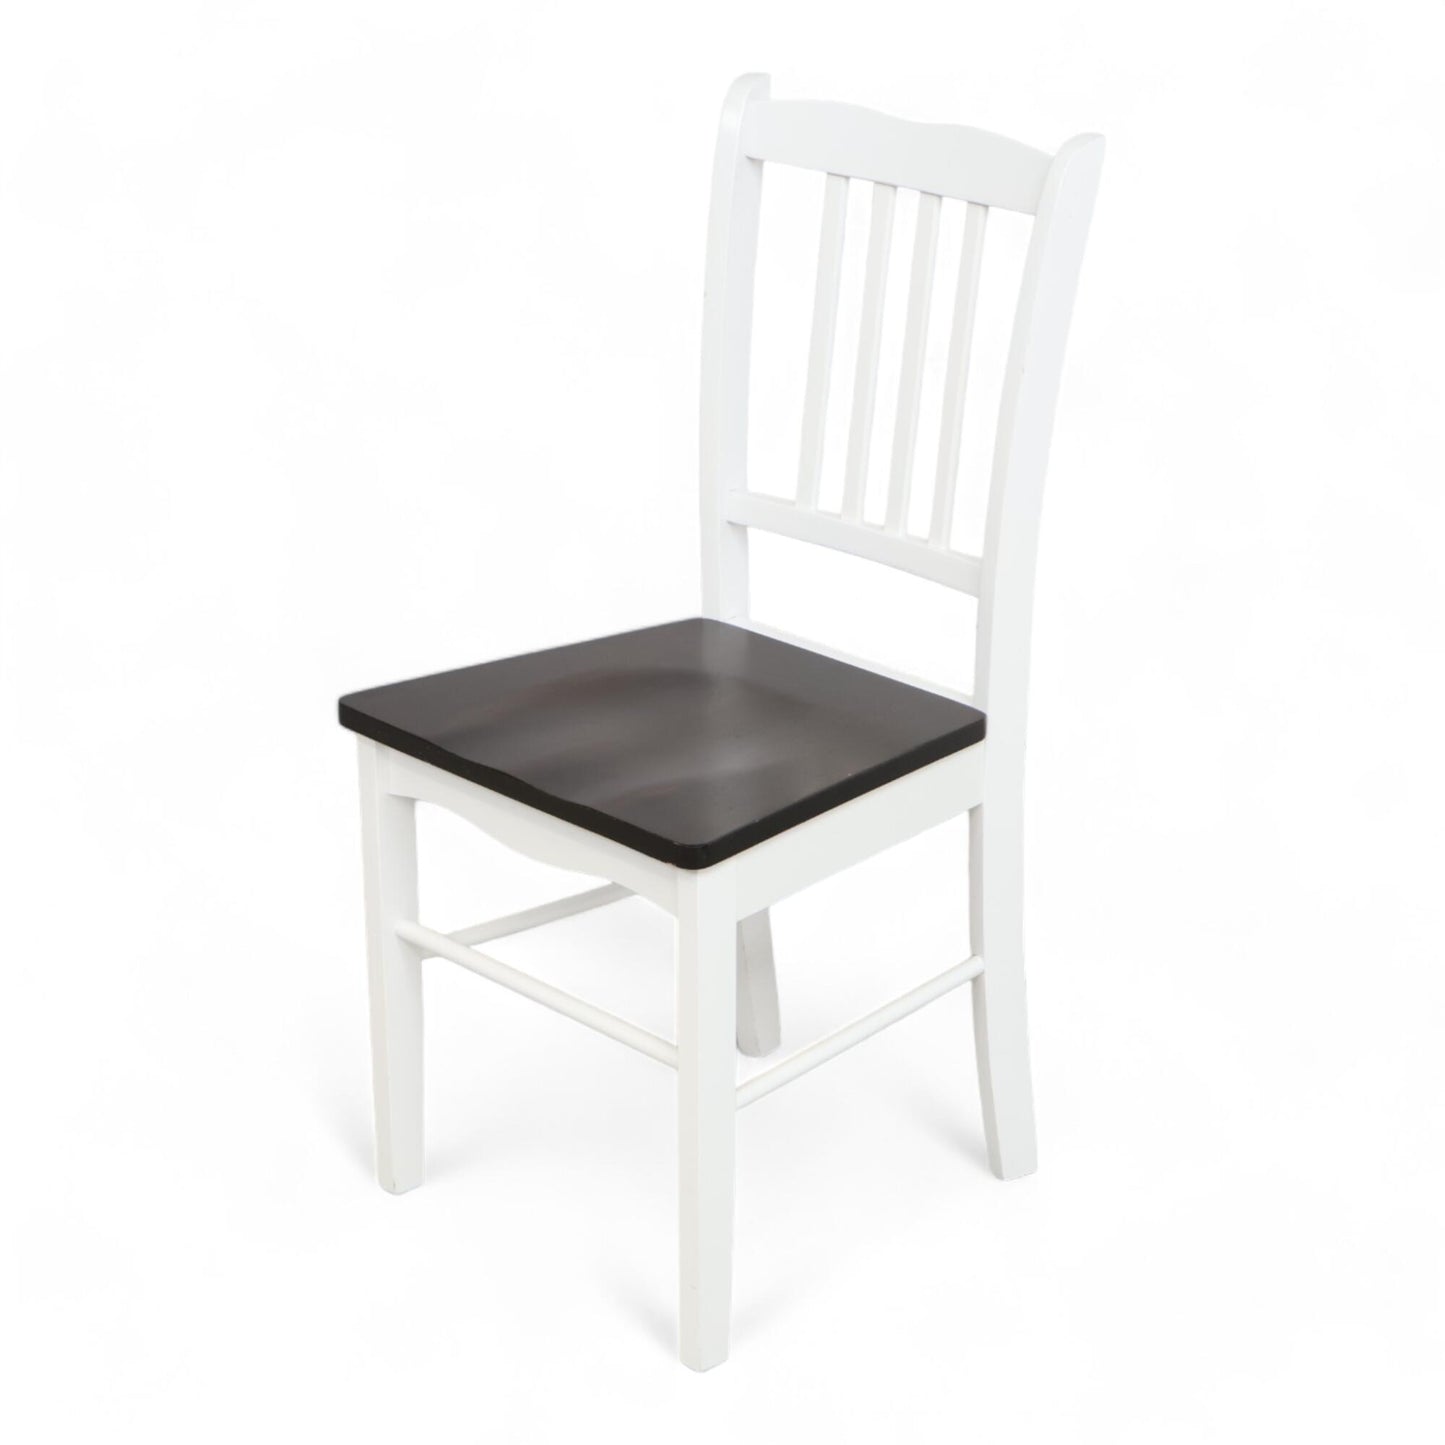 Nyrenset | Hvit med mørk brun sete stol fra Jysk